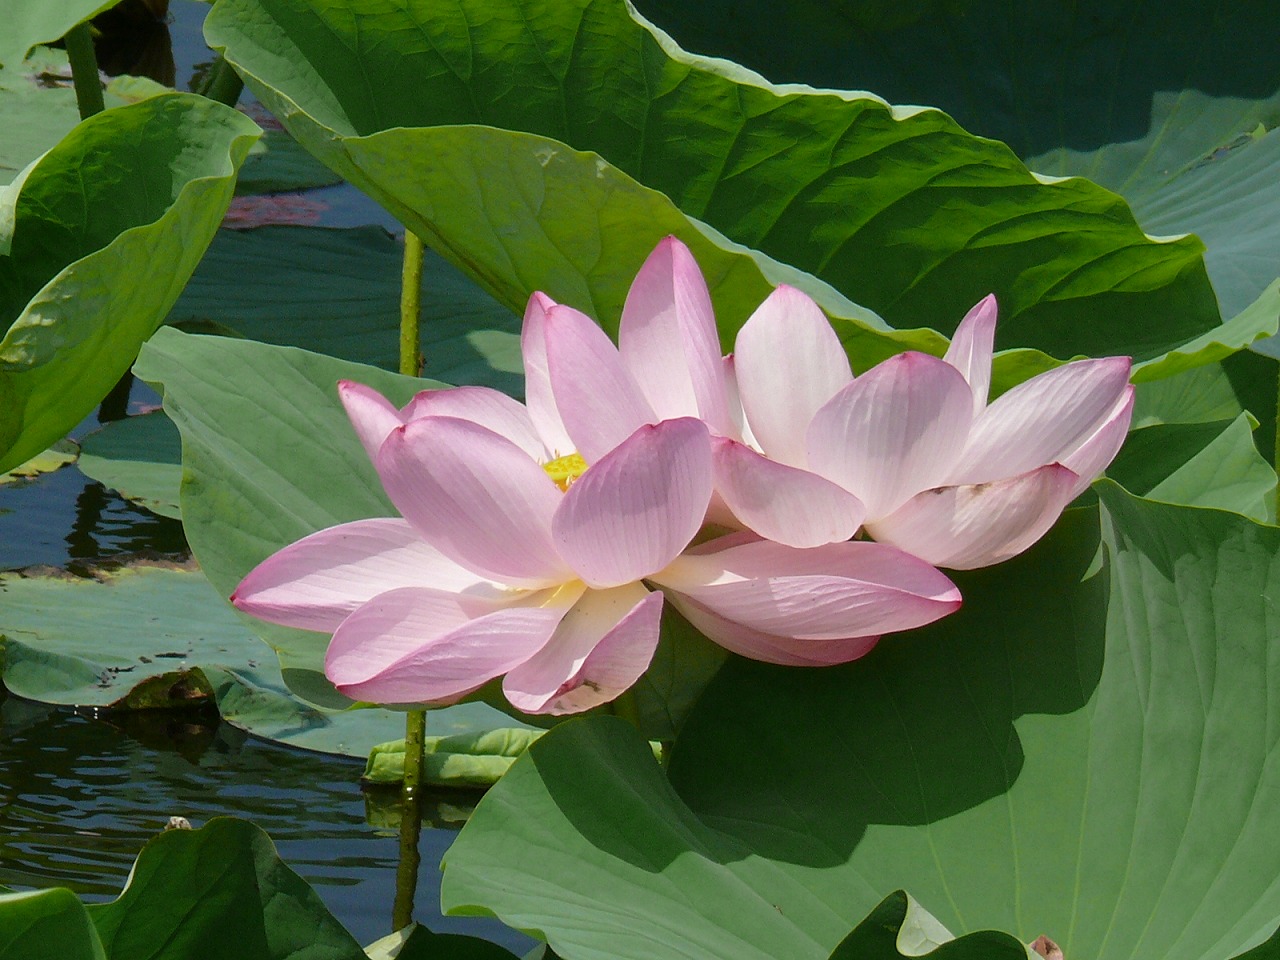 《夏季限定》ラムサール条約に登録される伊豆沼に咲くハスと宮城県産素材のランチを楽しむツアー